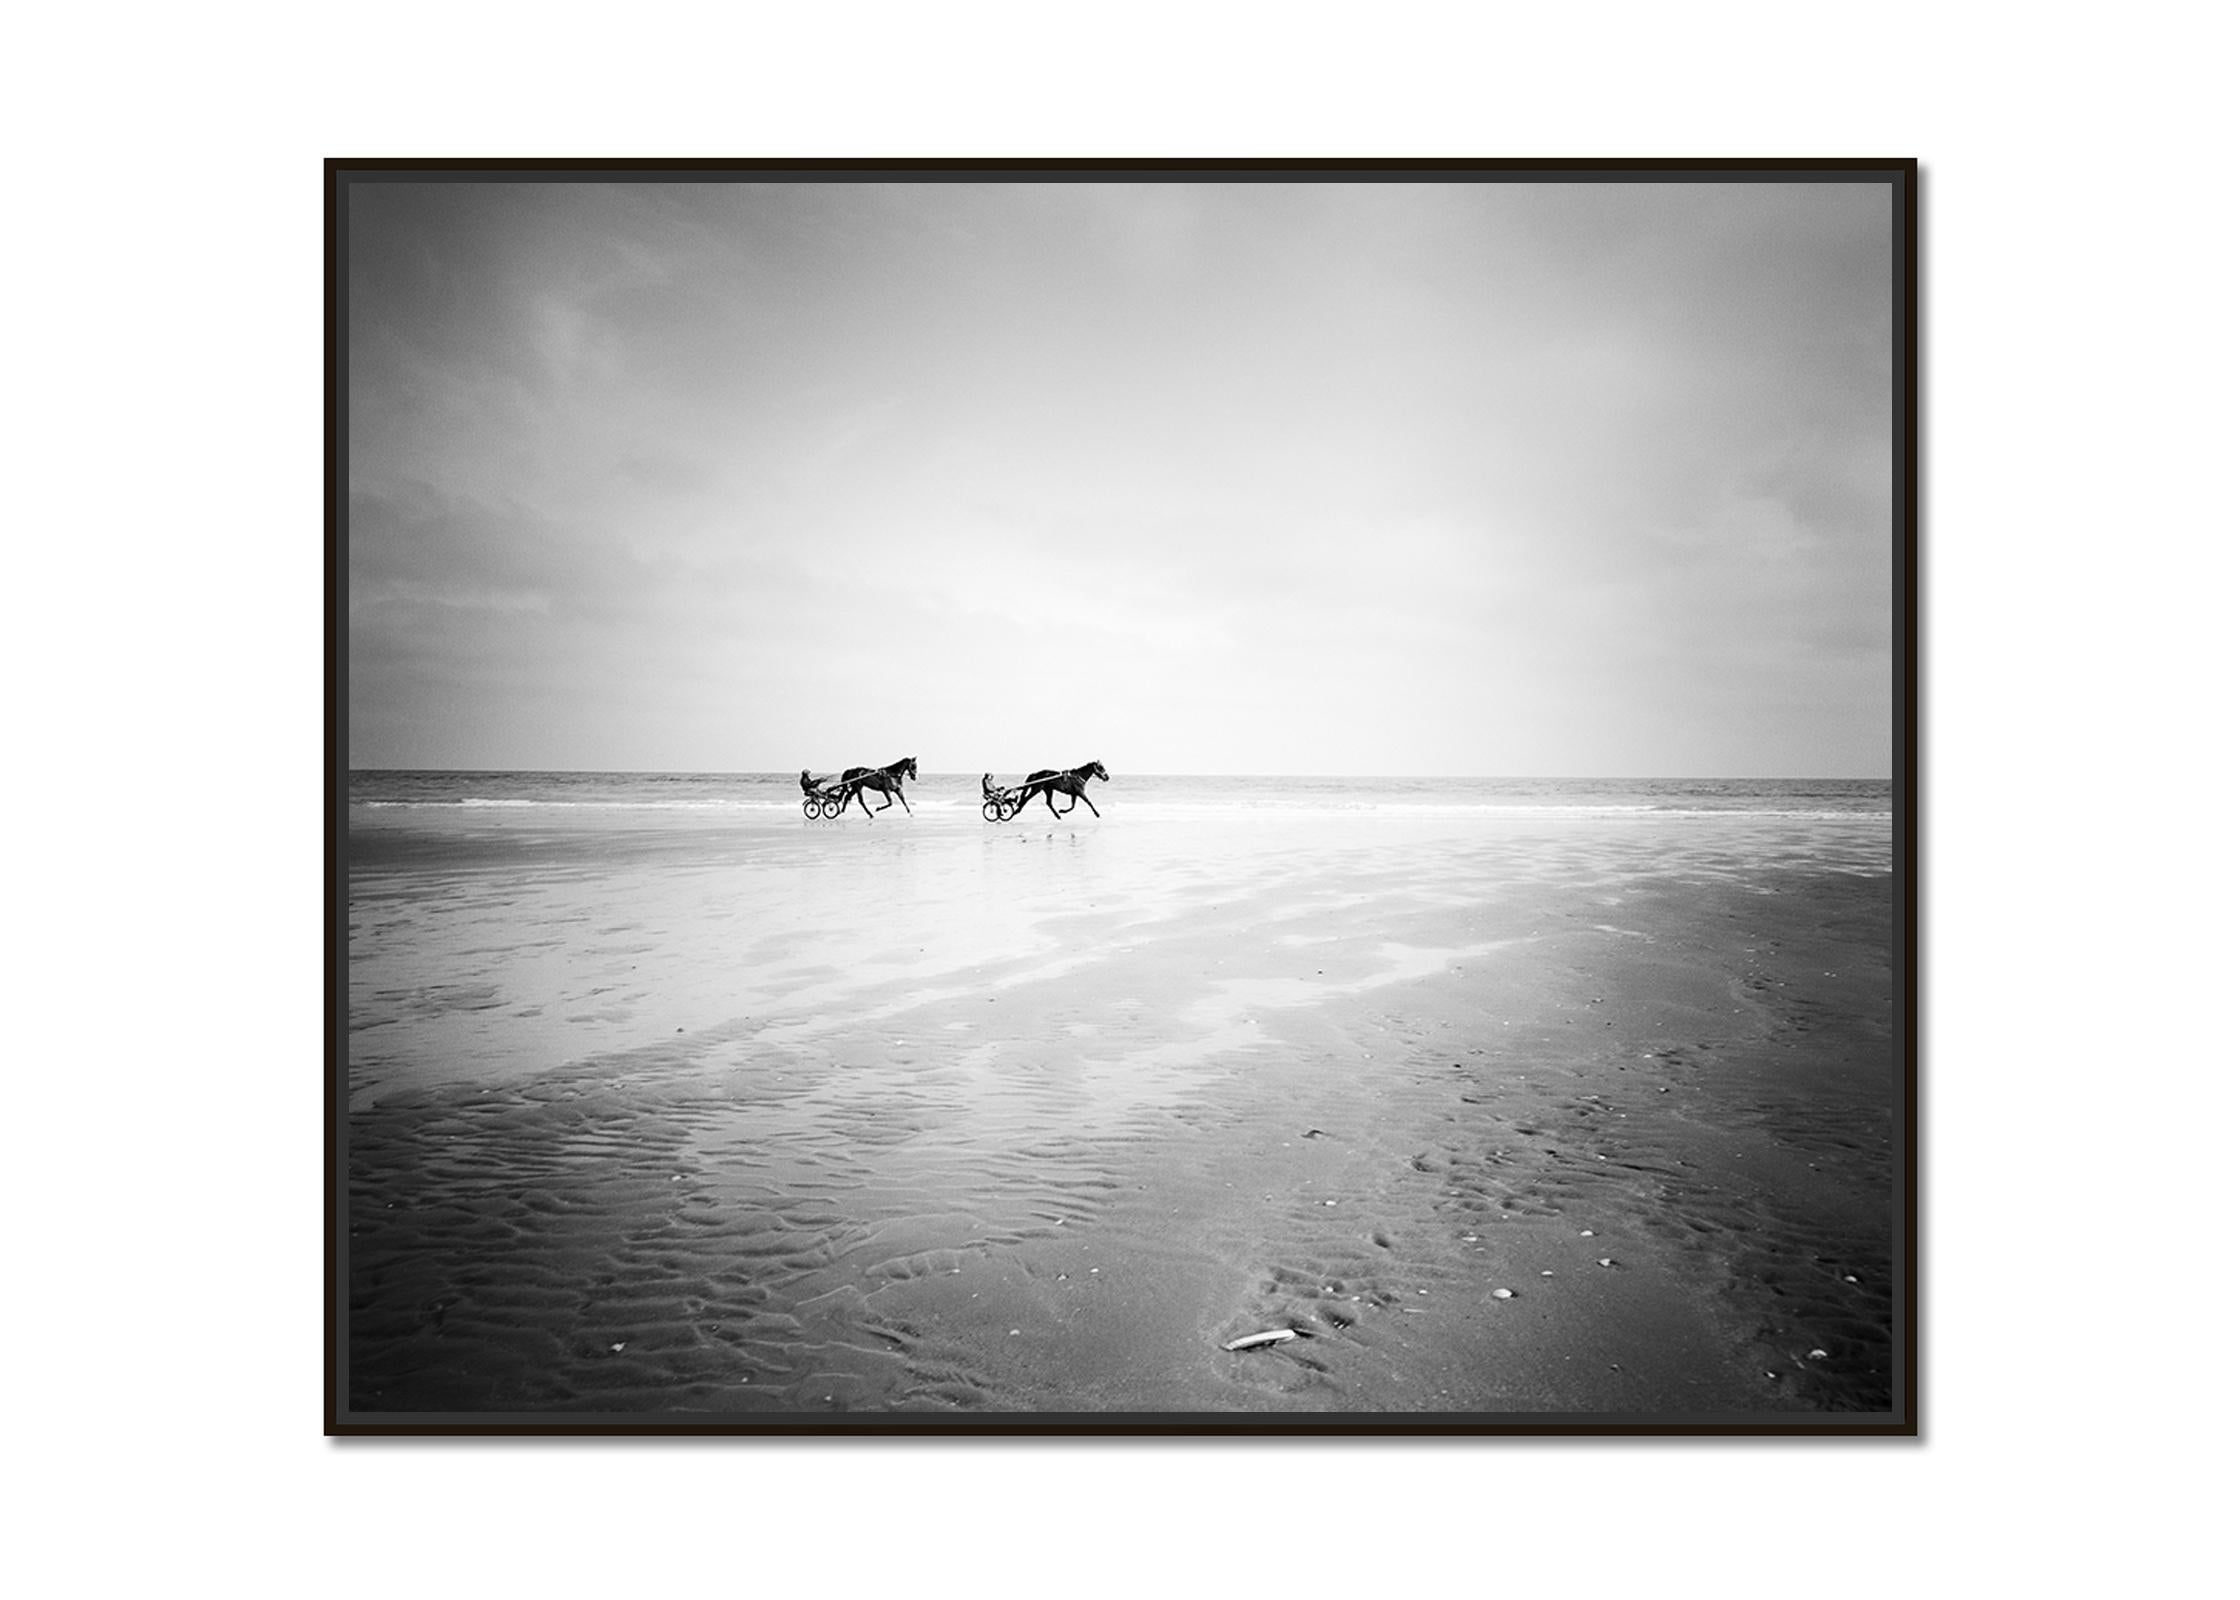 Harness Racing, Pferderennen, Strand, Schwarz-Weiß-Fotografie, Landschaft – Photograph von Gerald Berghammer